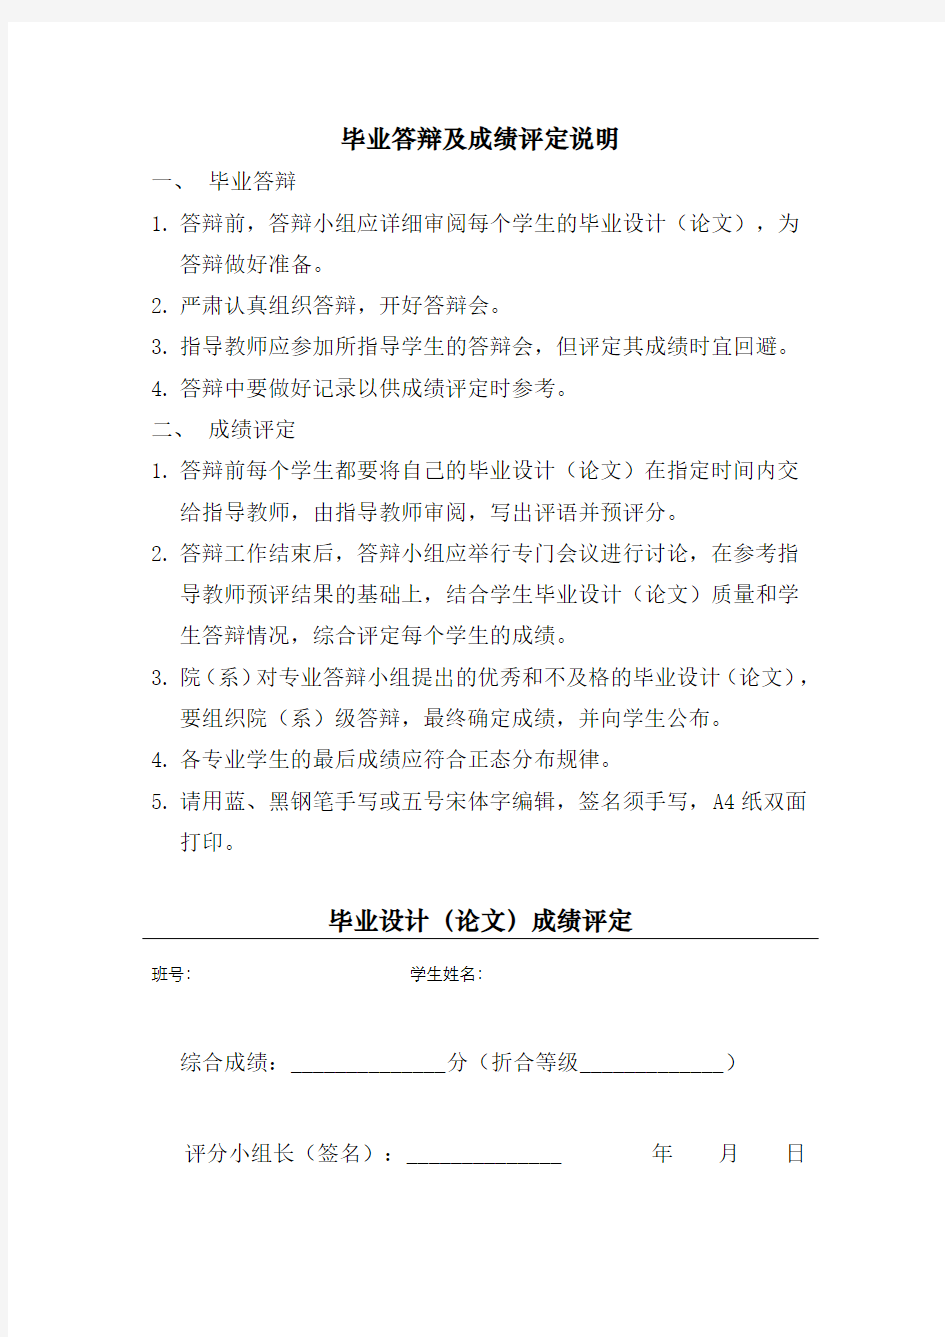 华中科技大学 毕业设计(论文)成绩评定表(20150316)